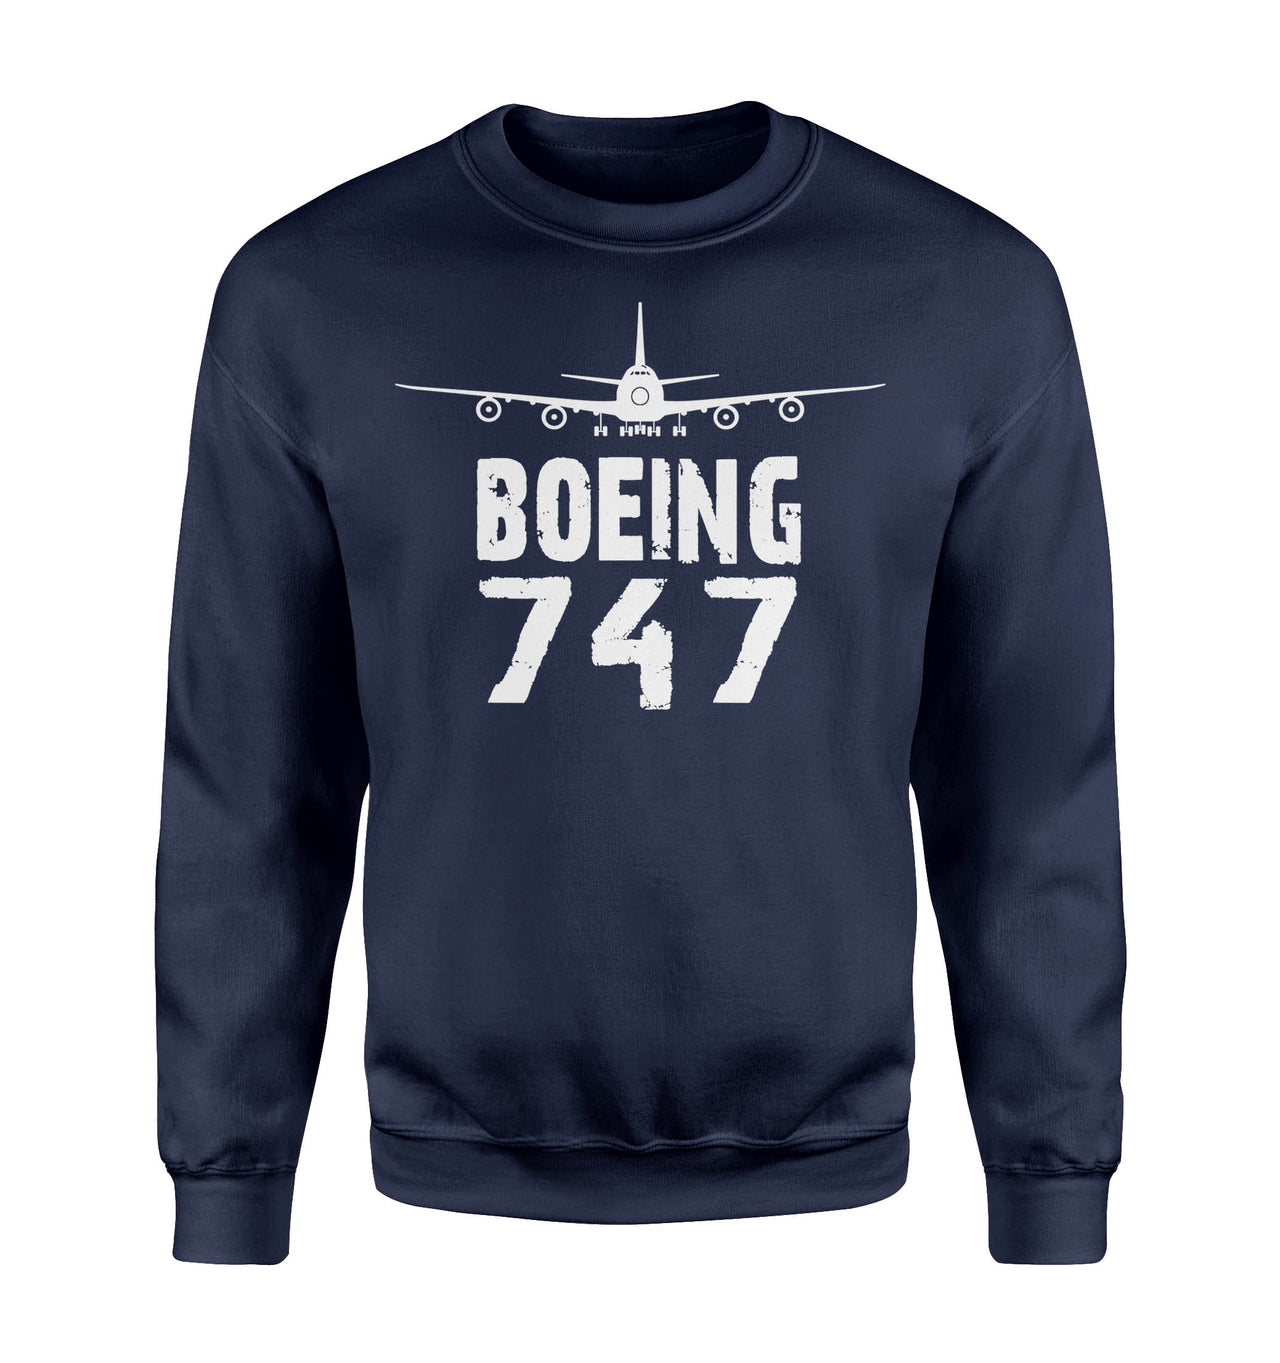 Boeing 747 & Plane Designed Sweatshirts